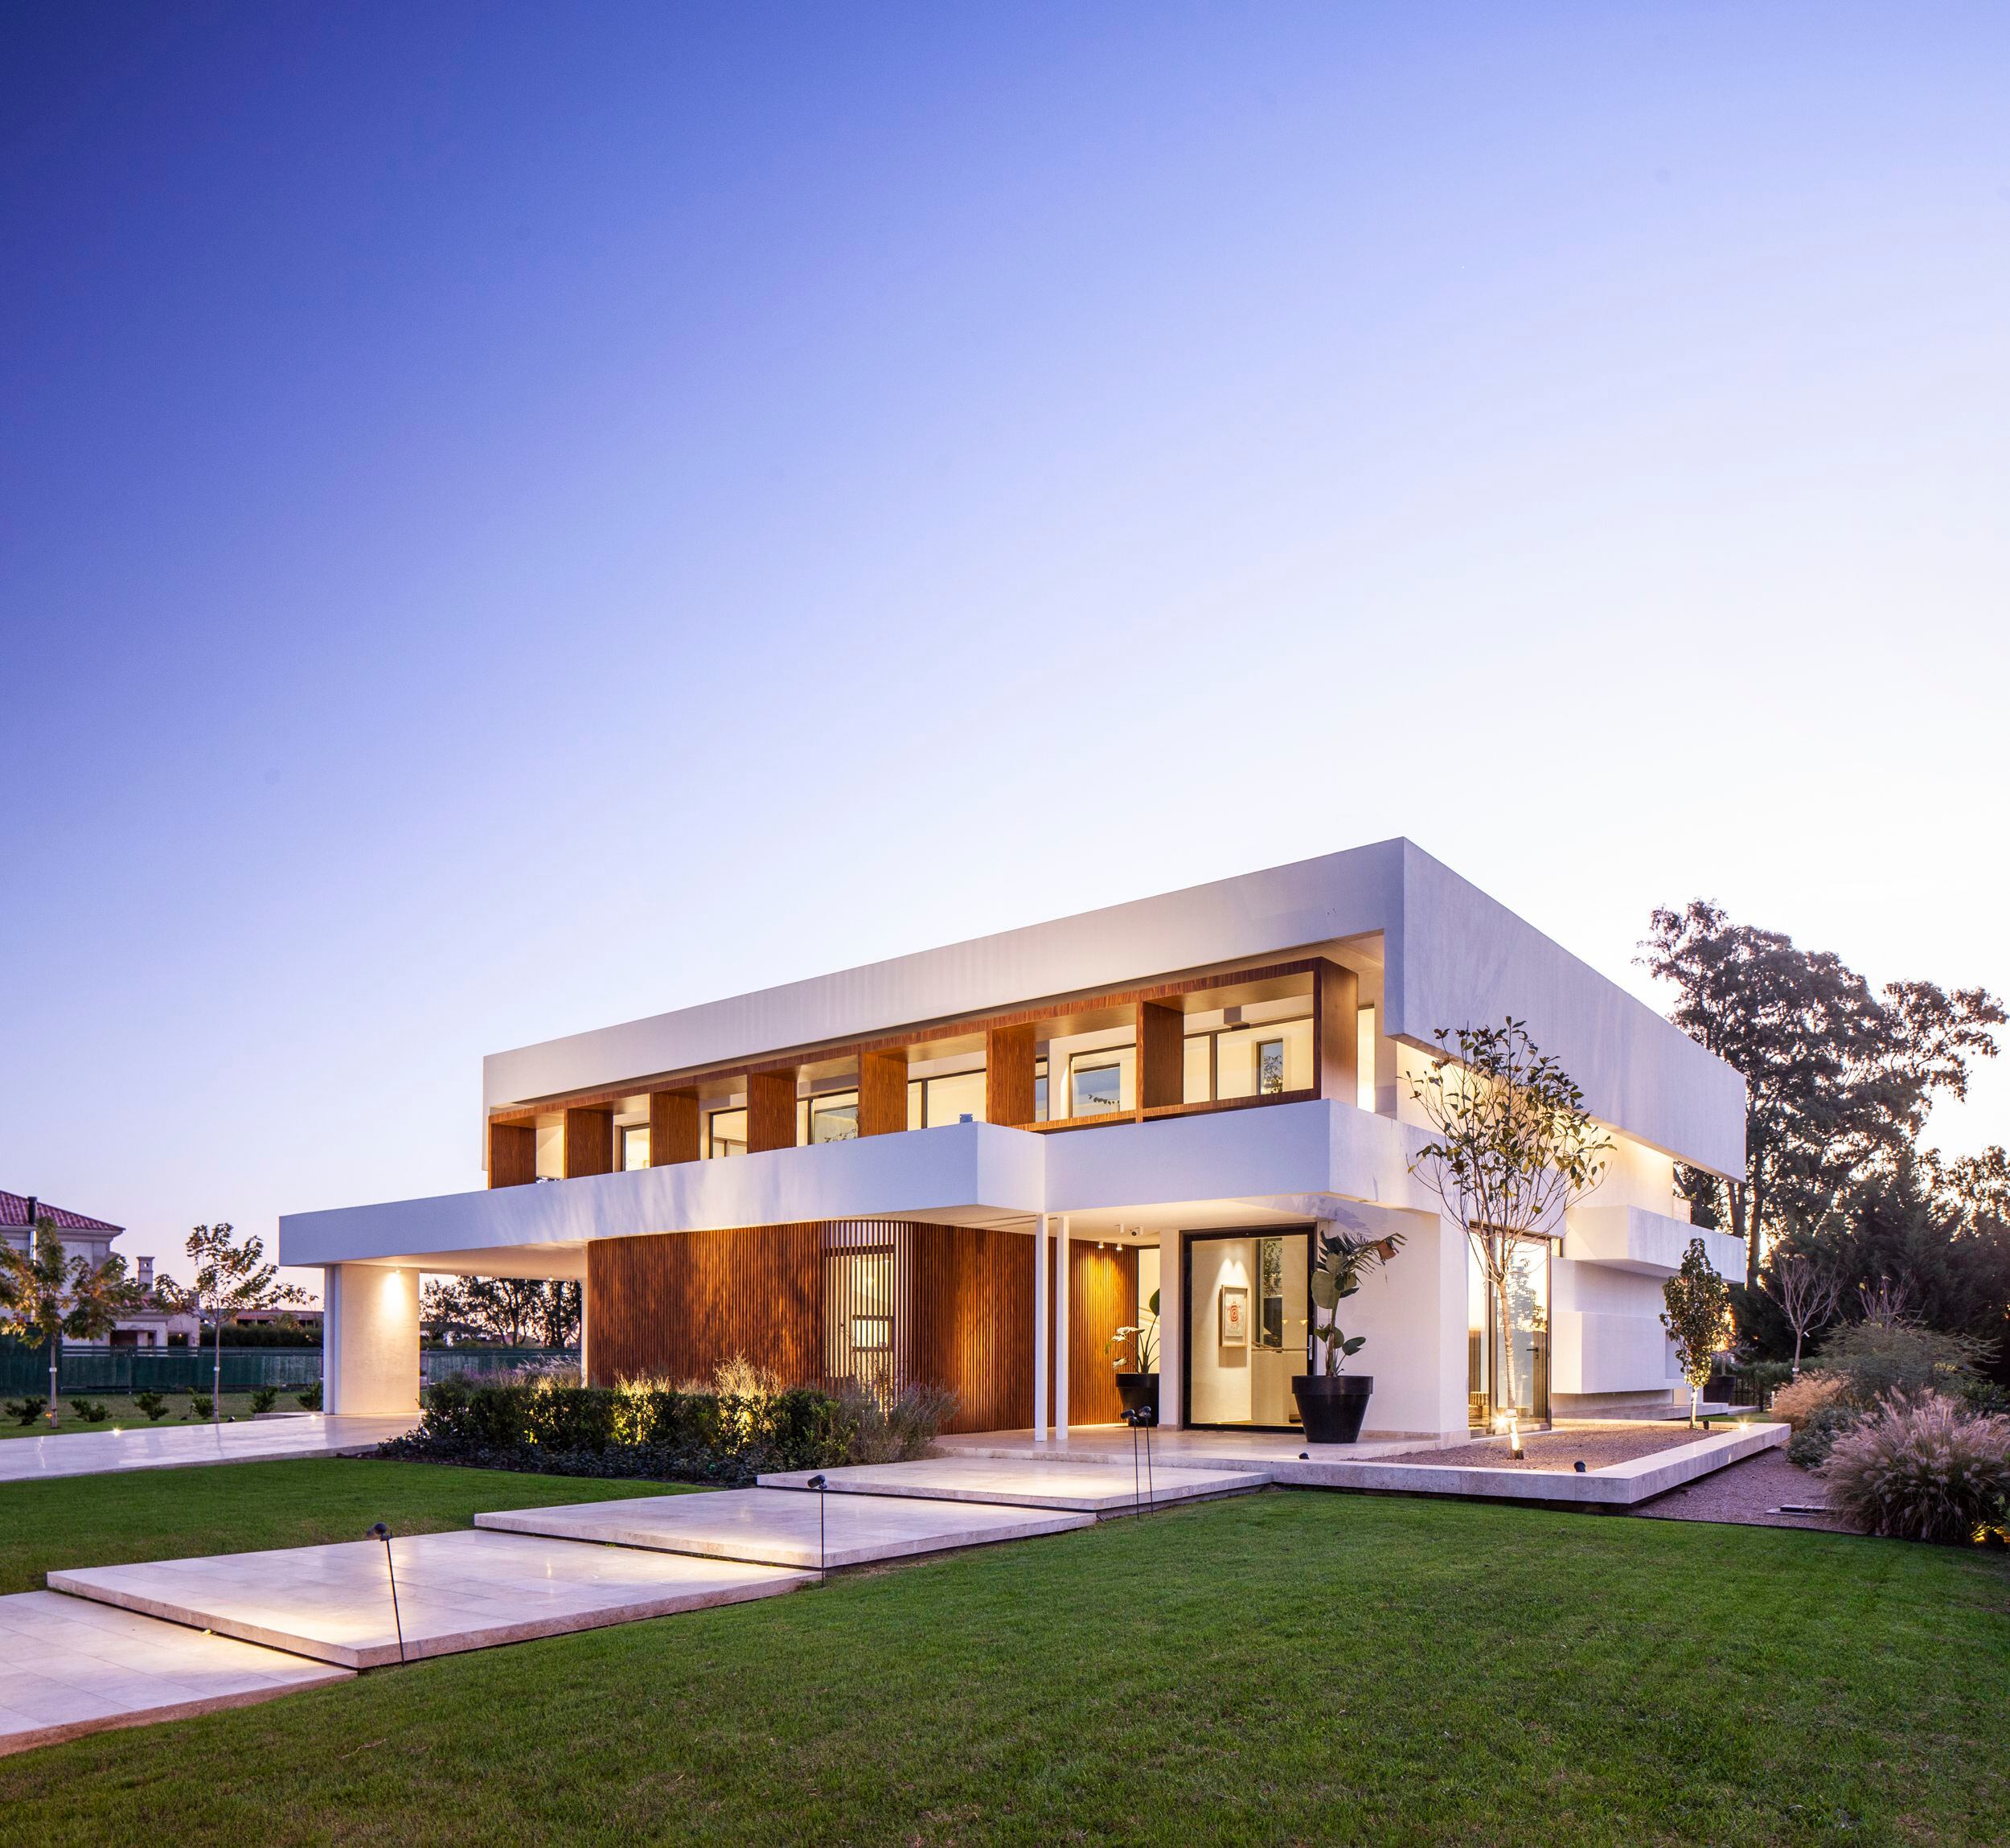 Esta casa está en un country en Buenos Aires y ganó un premio internacional al mejor diseño